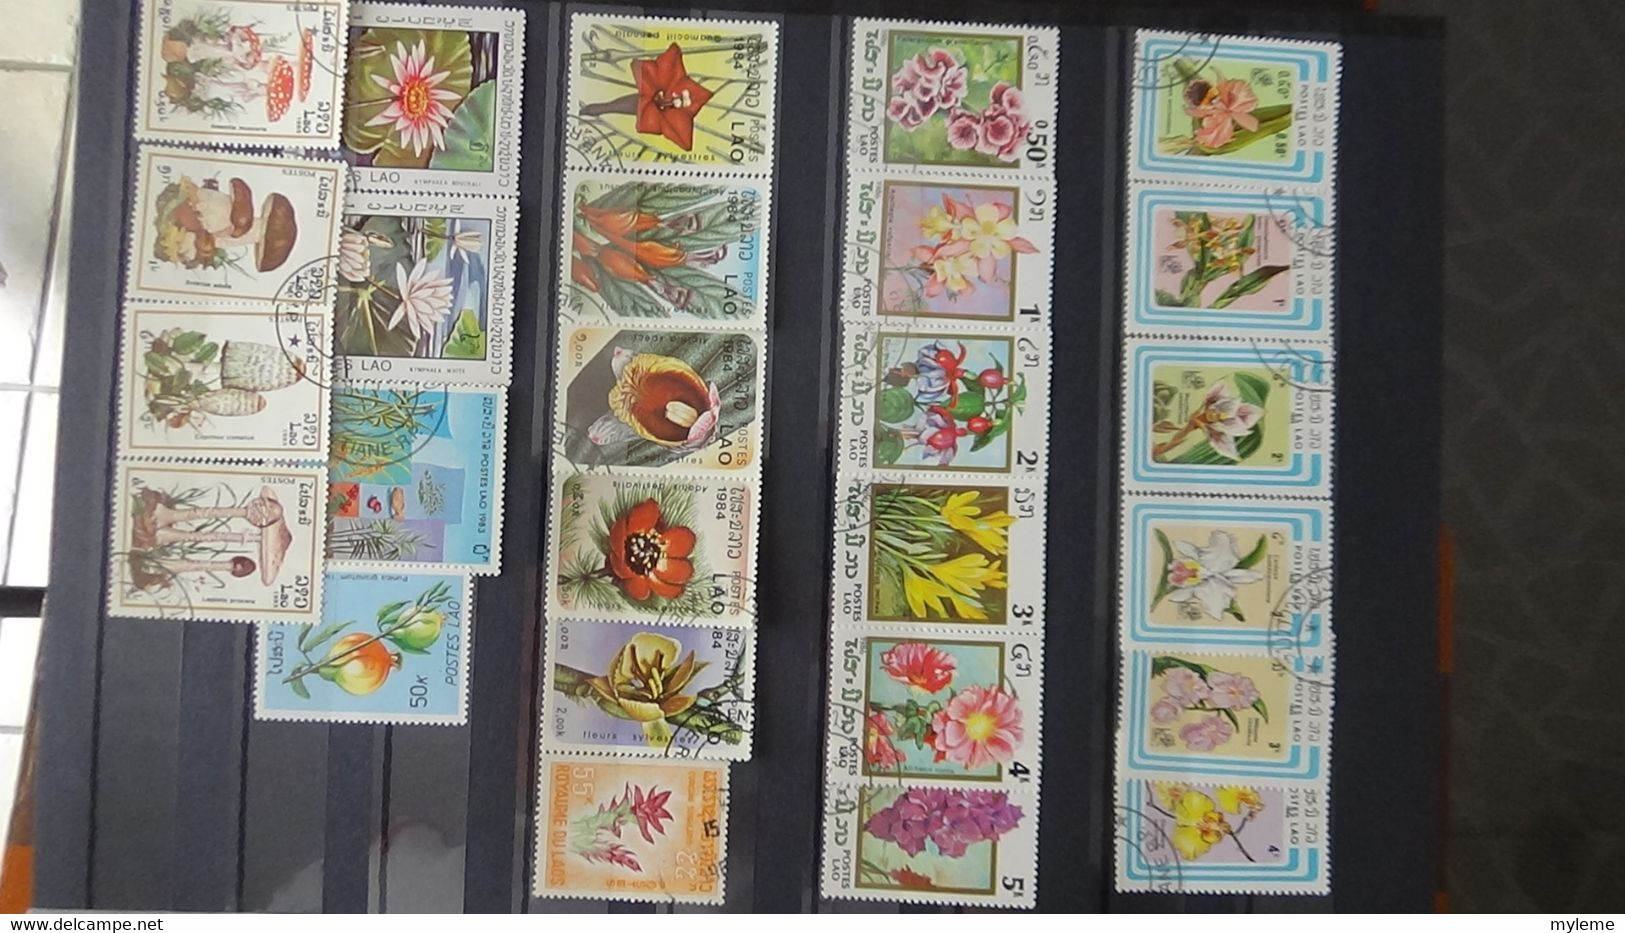 V101 Collection du Laos et autres en timbres oblitérés . A saisir!!!